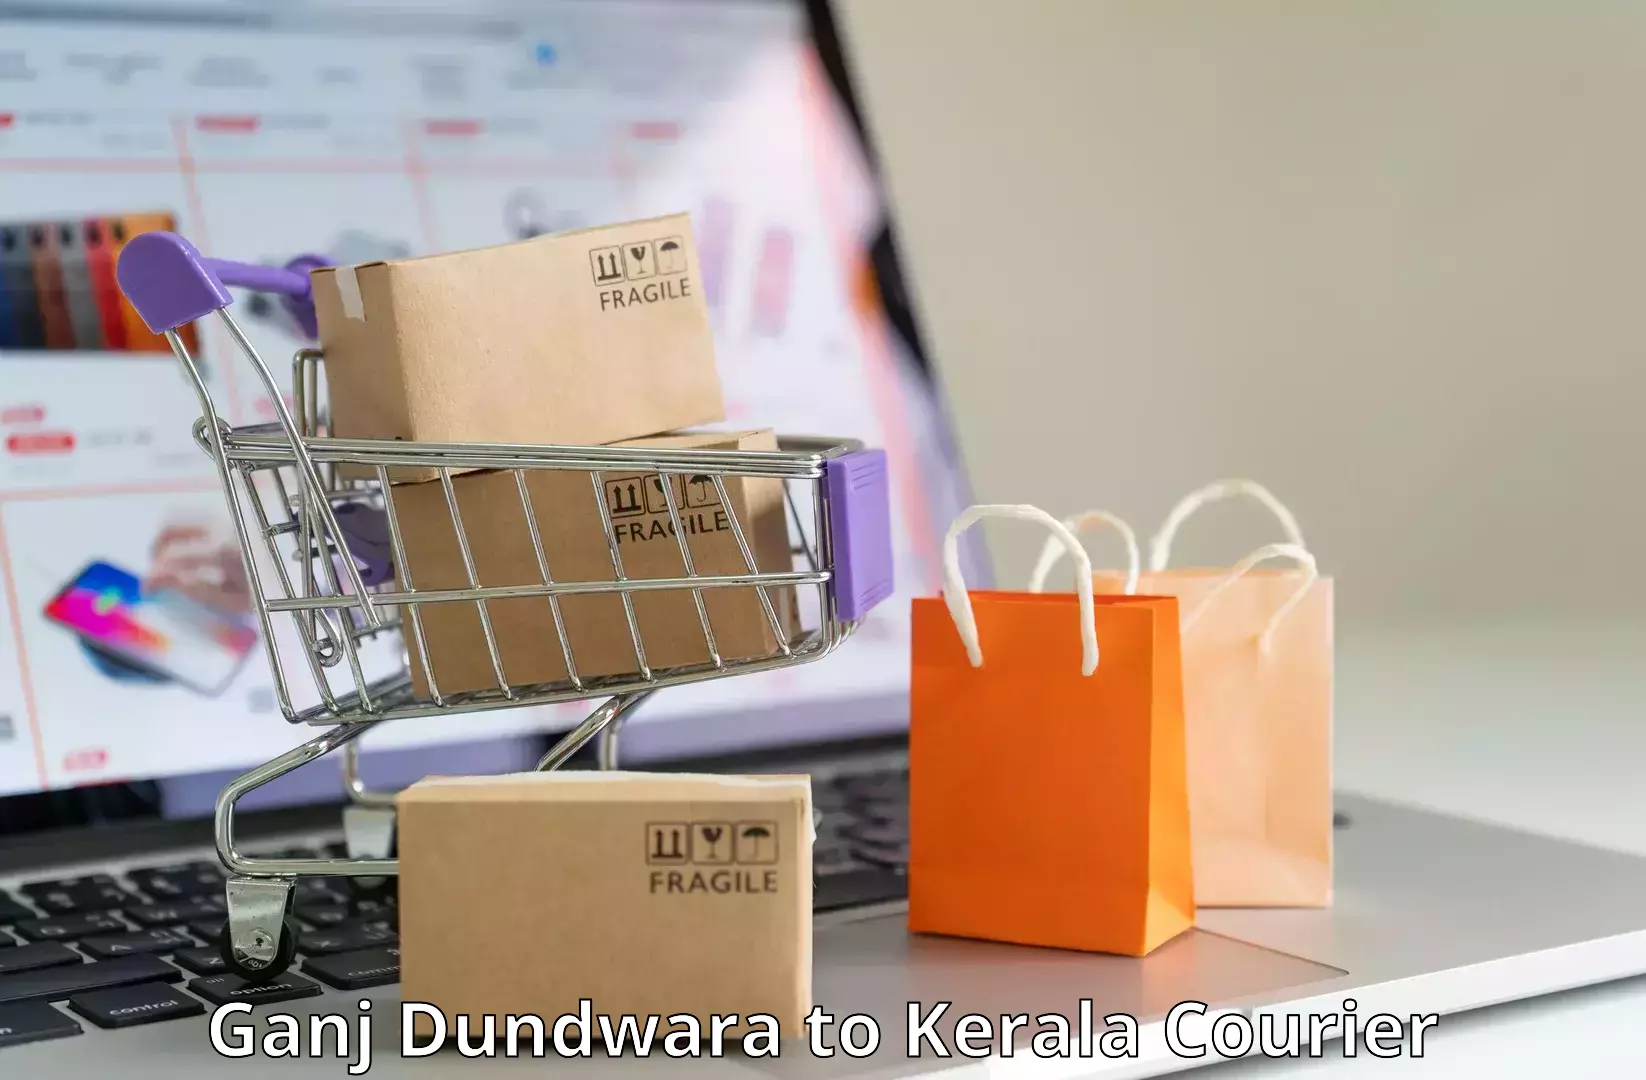 Express package handling Ganj Dundwara to Kodungallur